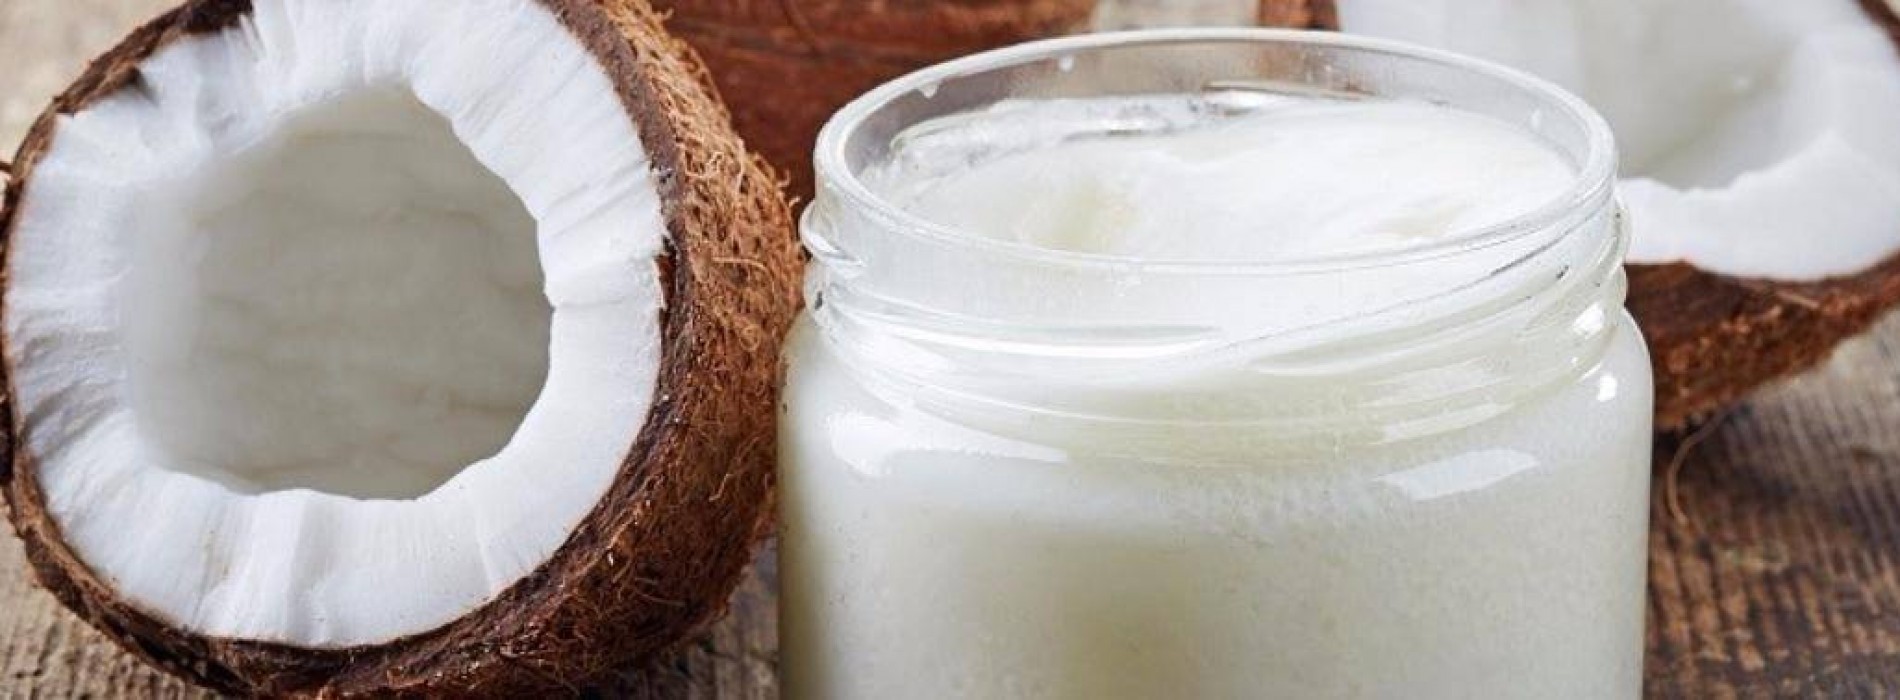 10 redenen om kokosolie in huis te hebben